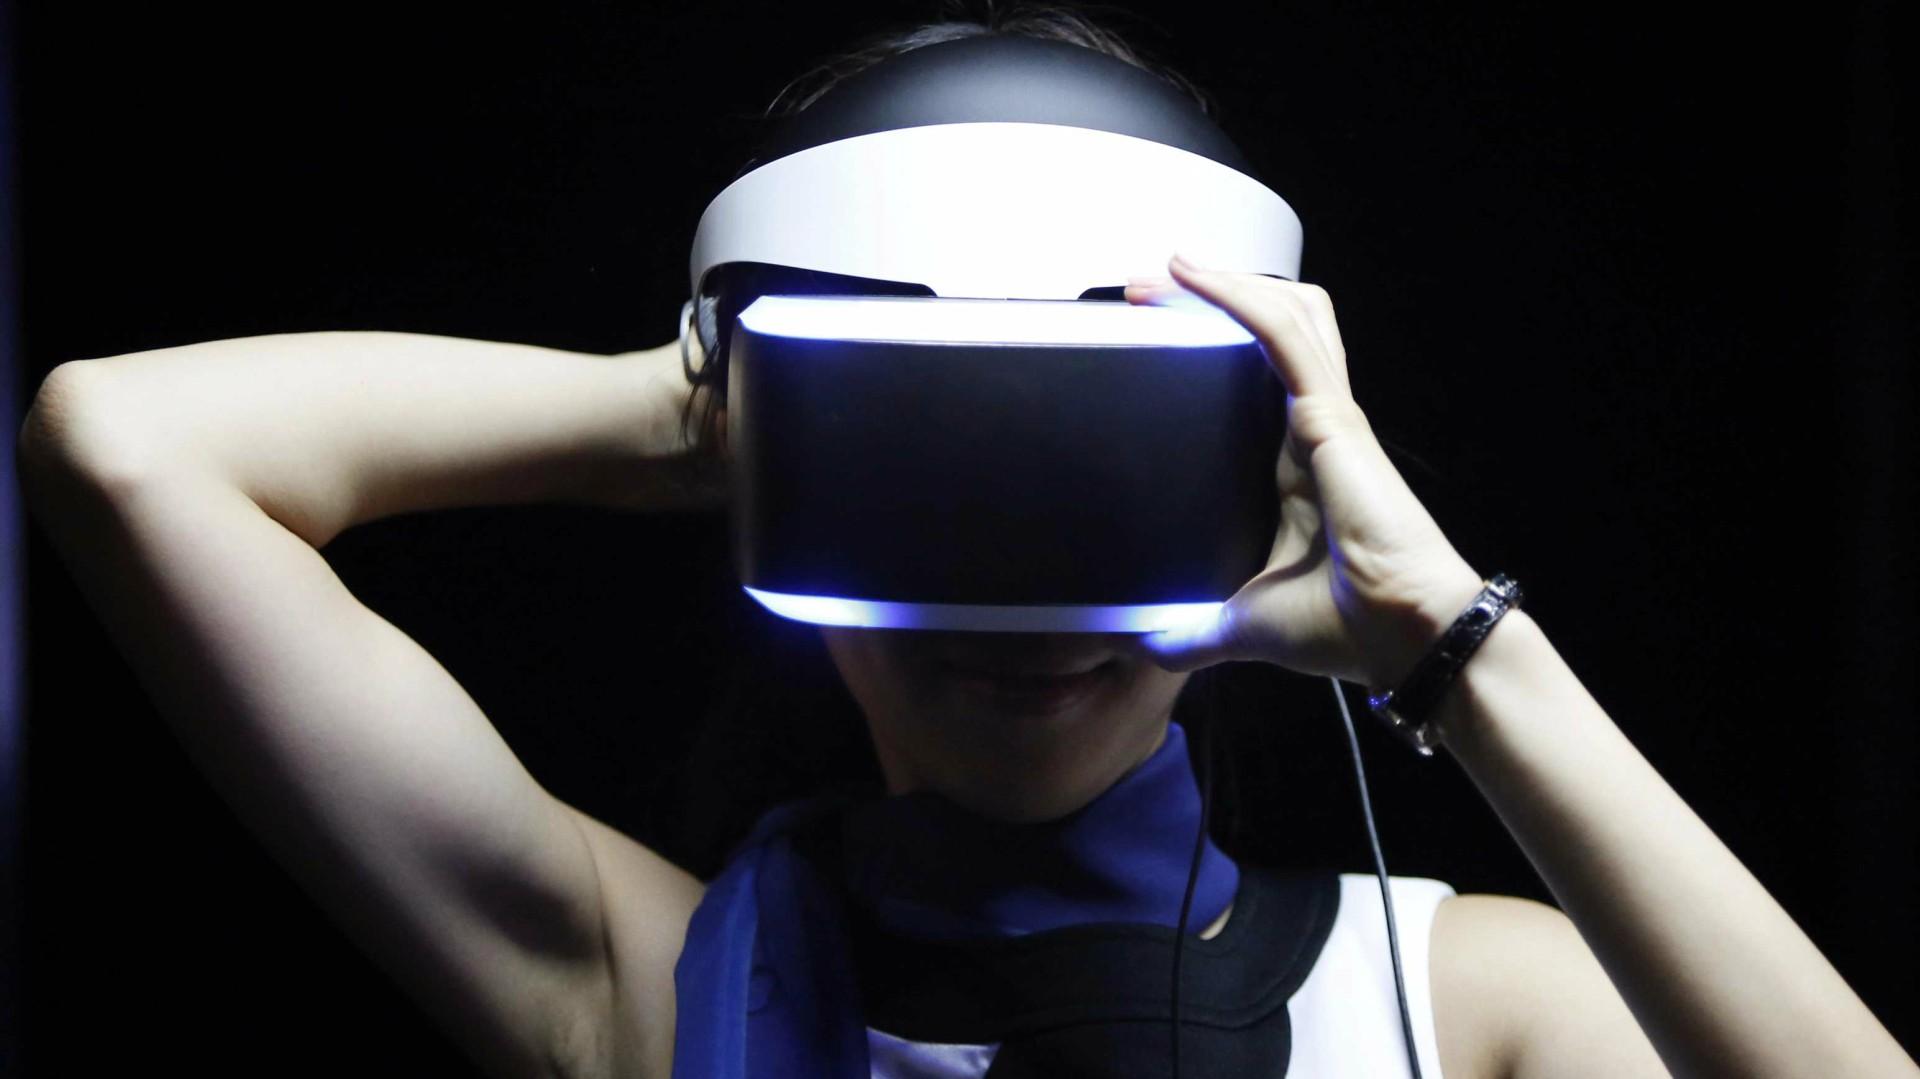 PlayStation VR ra mắt tháng 10 với giá 400 USD